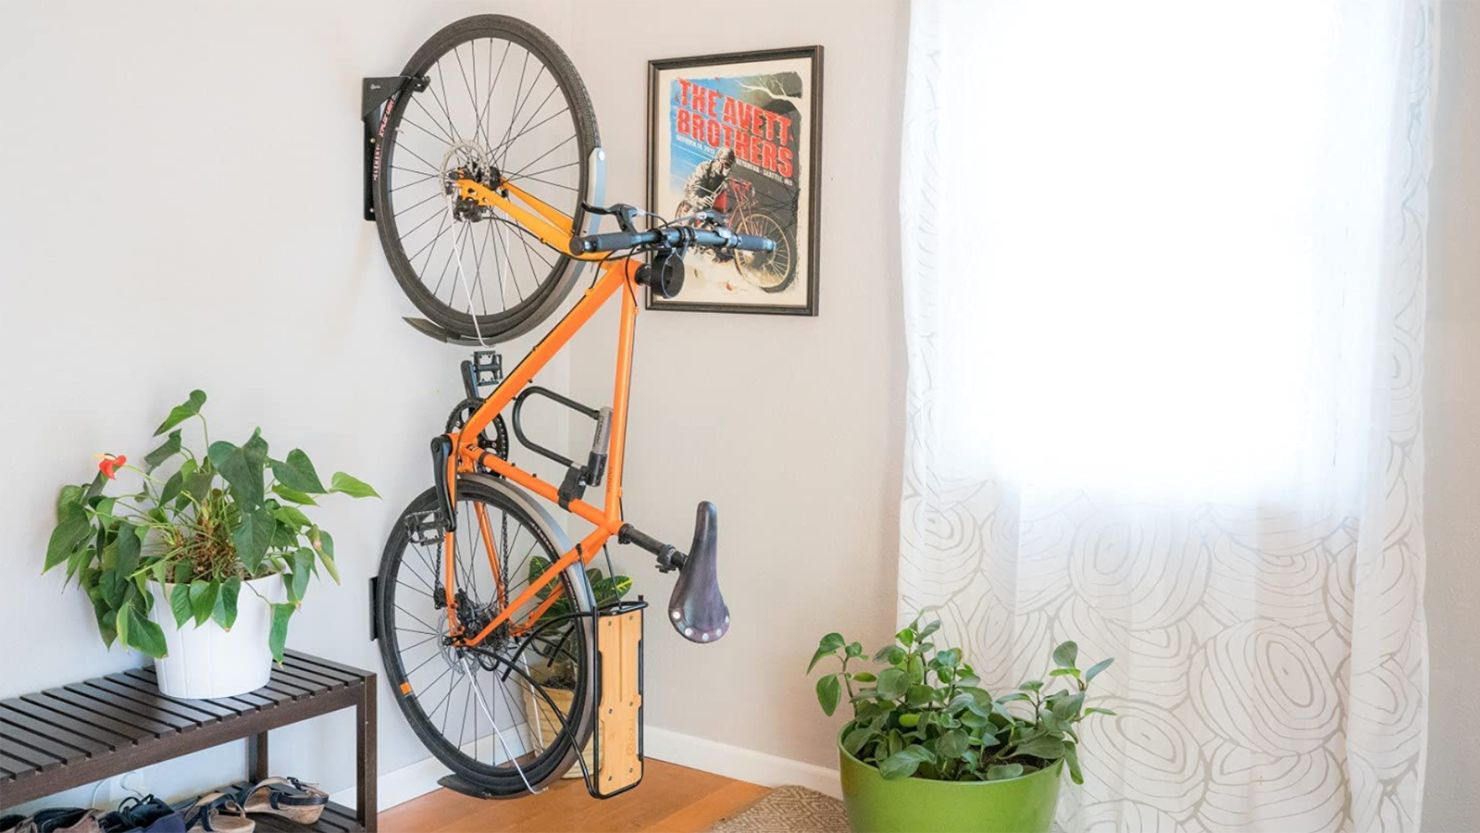  HOMEE Bike Hanger Wall Mount Foldable Bicycle Rack